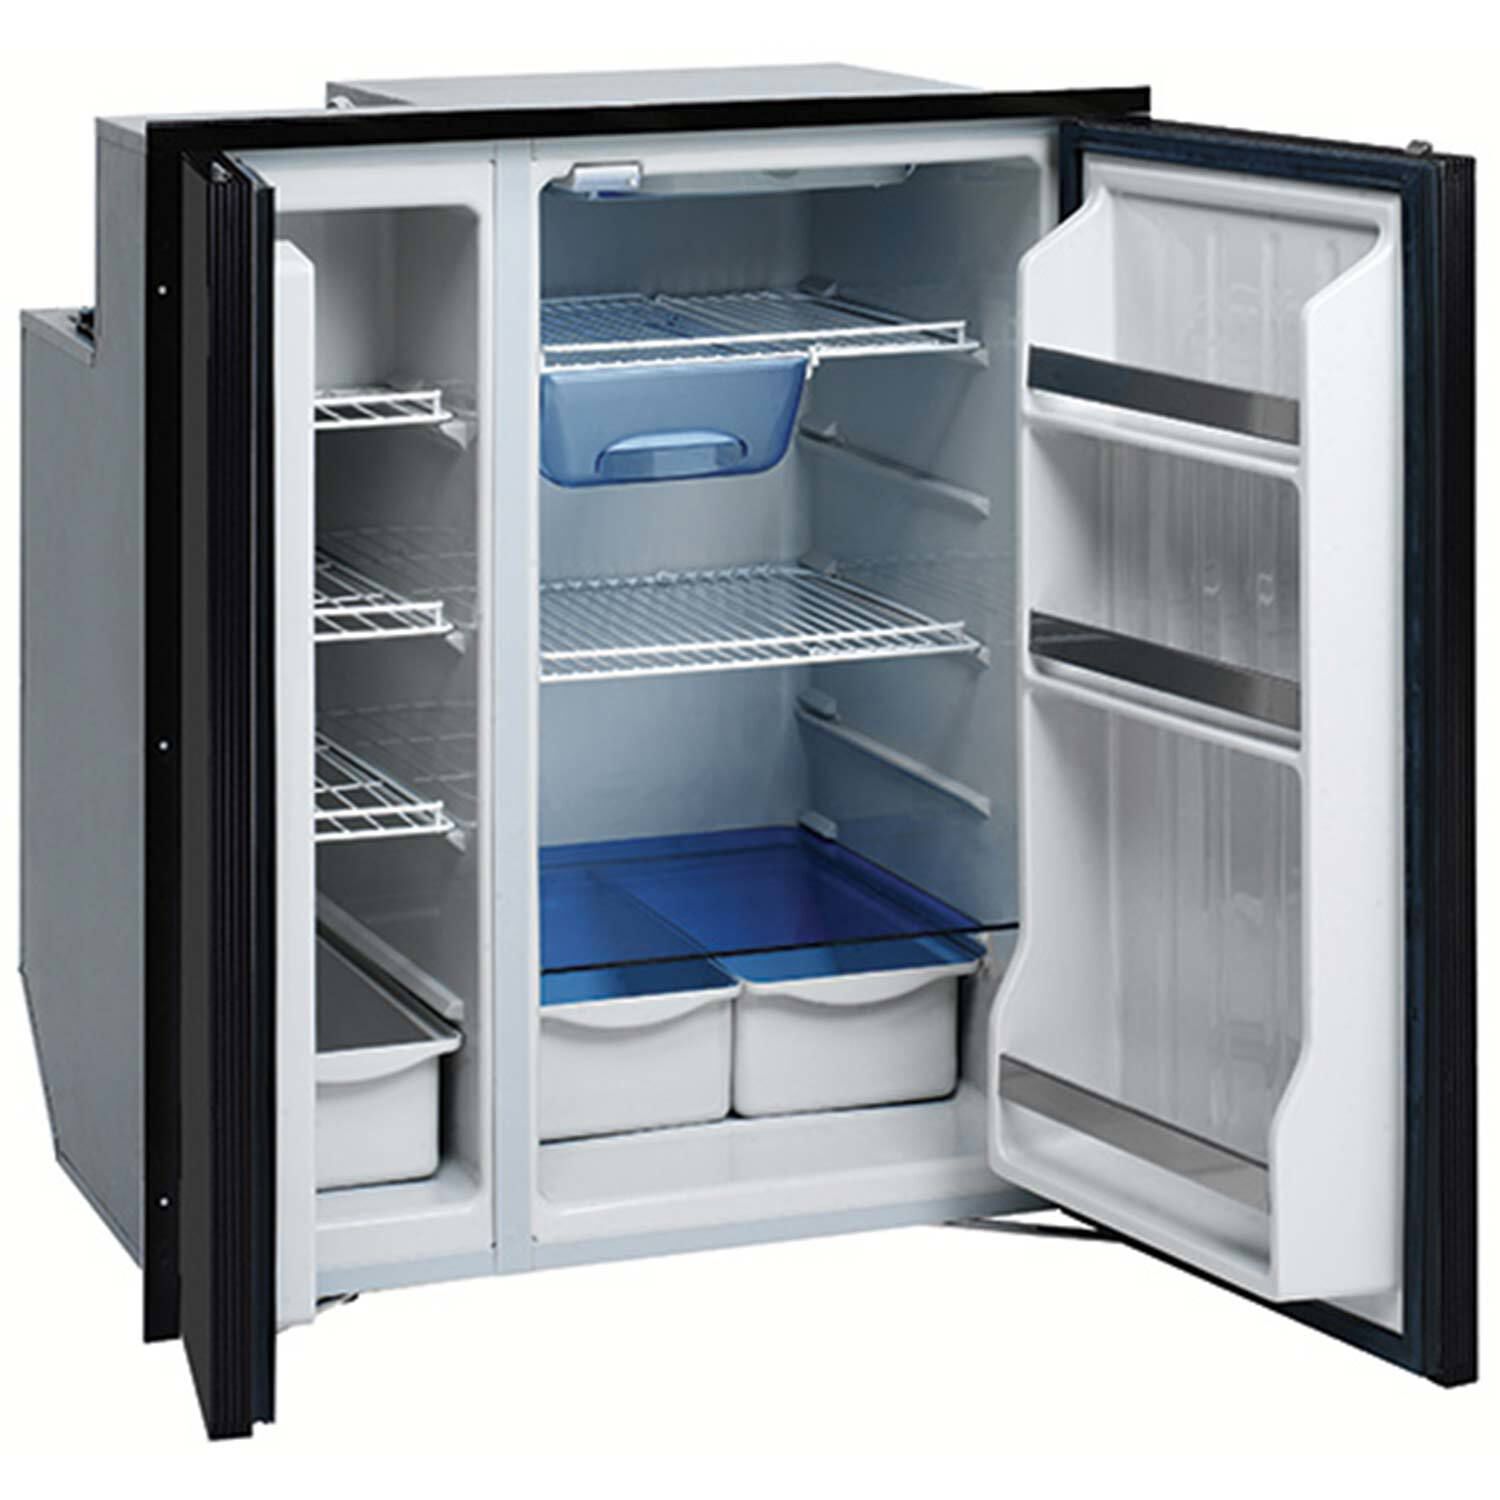 Купить холодильник с доставкой спб. Холодильник Freezer Refrigerator. Холодильник Isotherm. Холодильник Бирюса двухдверный. Двухдверный холодильный professional 1200.